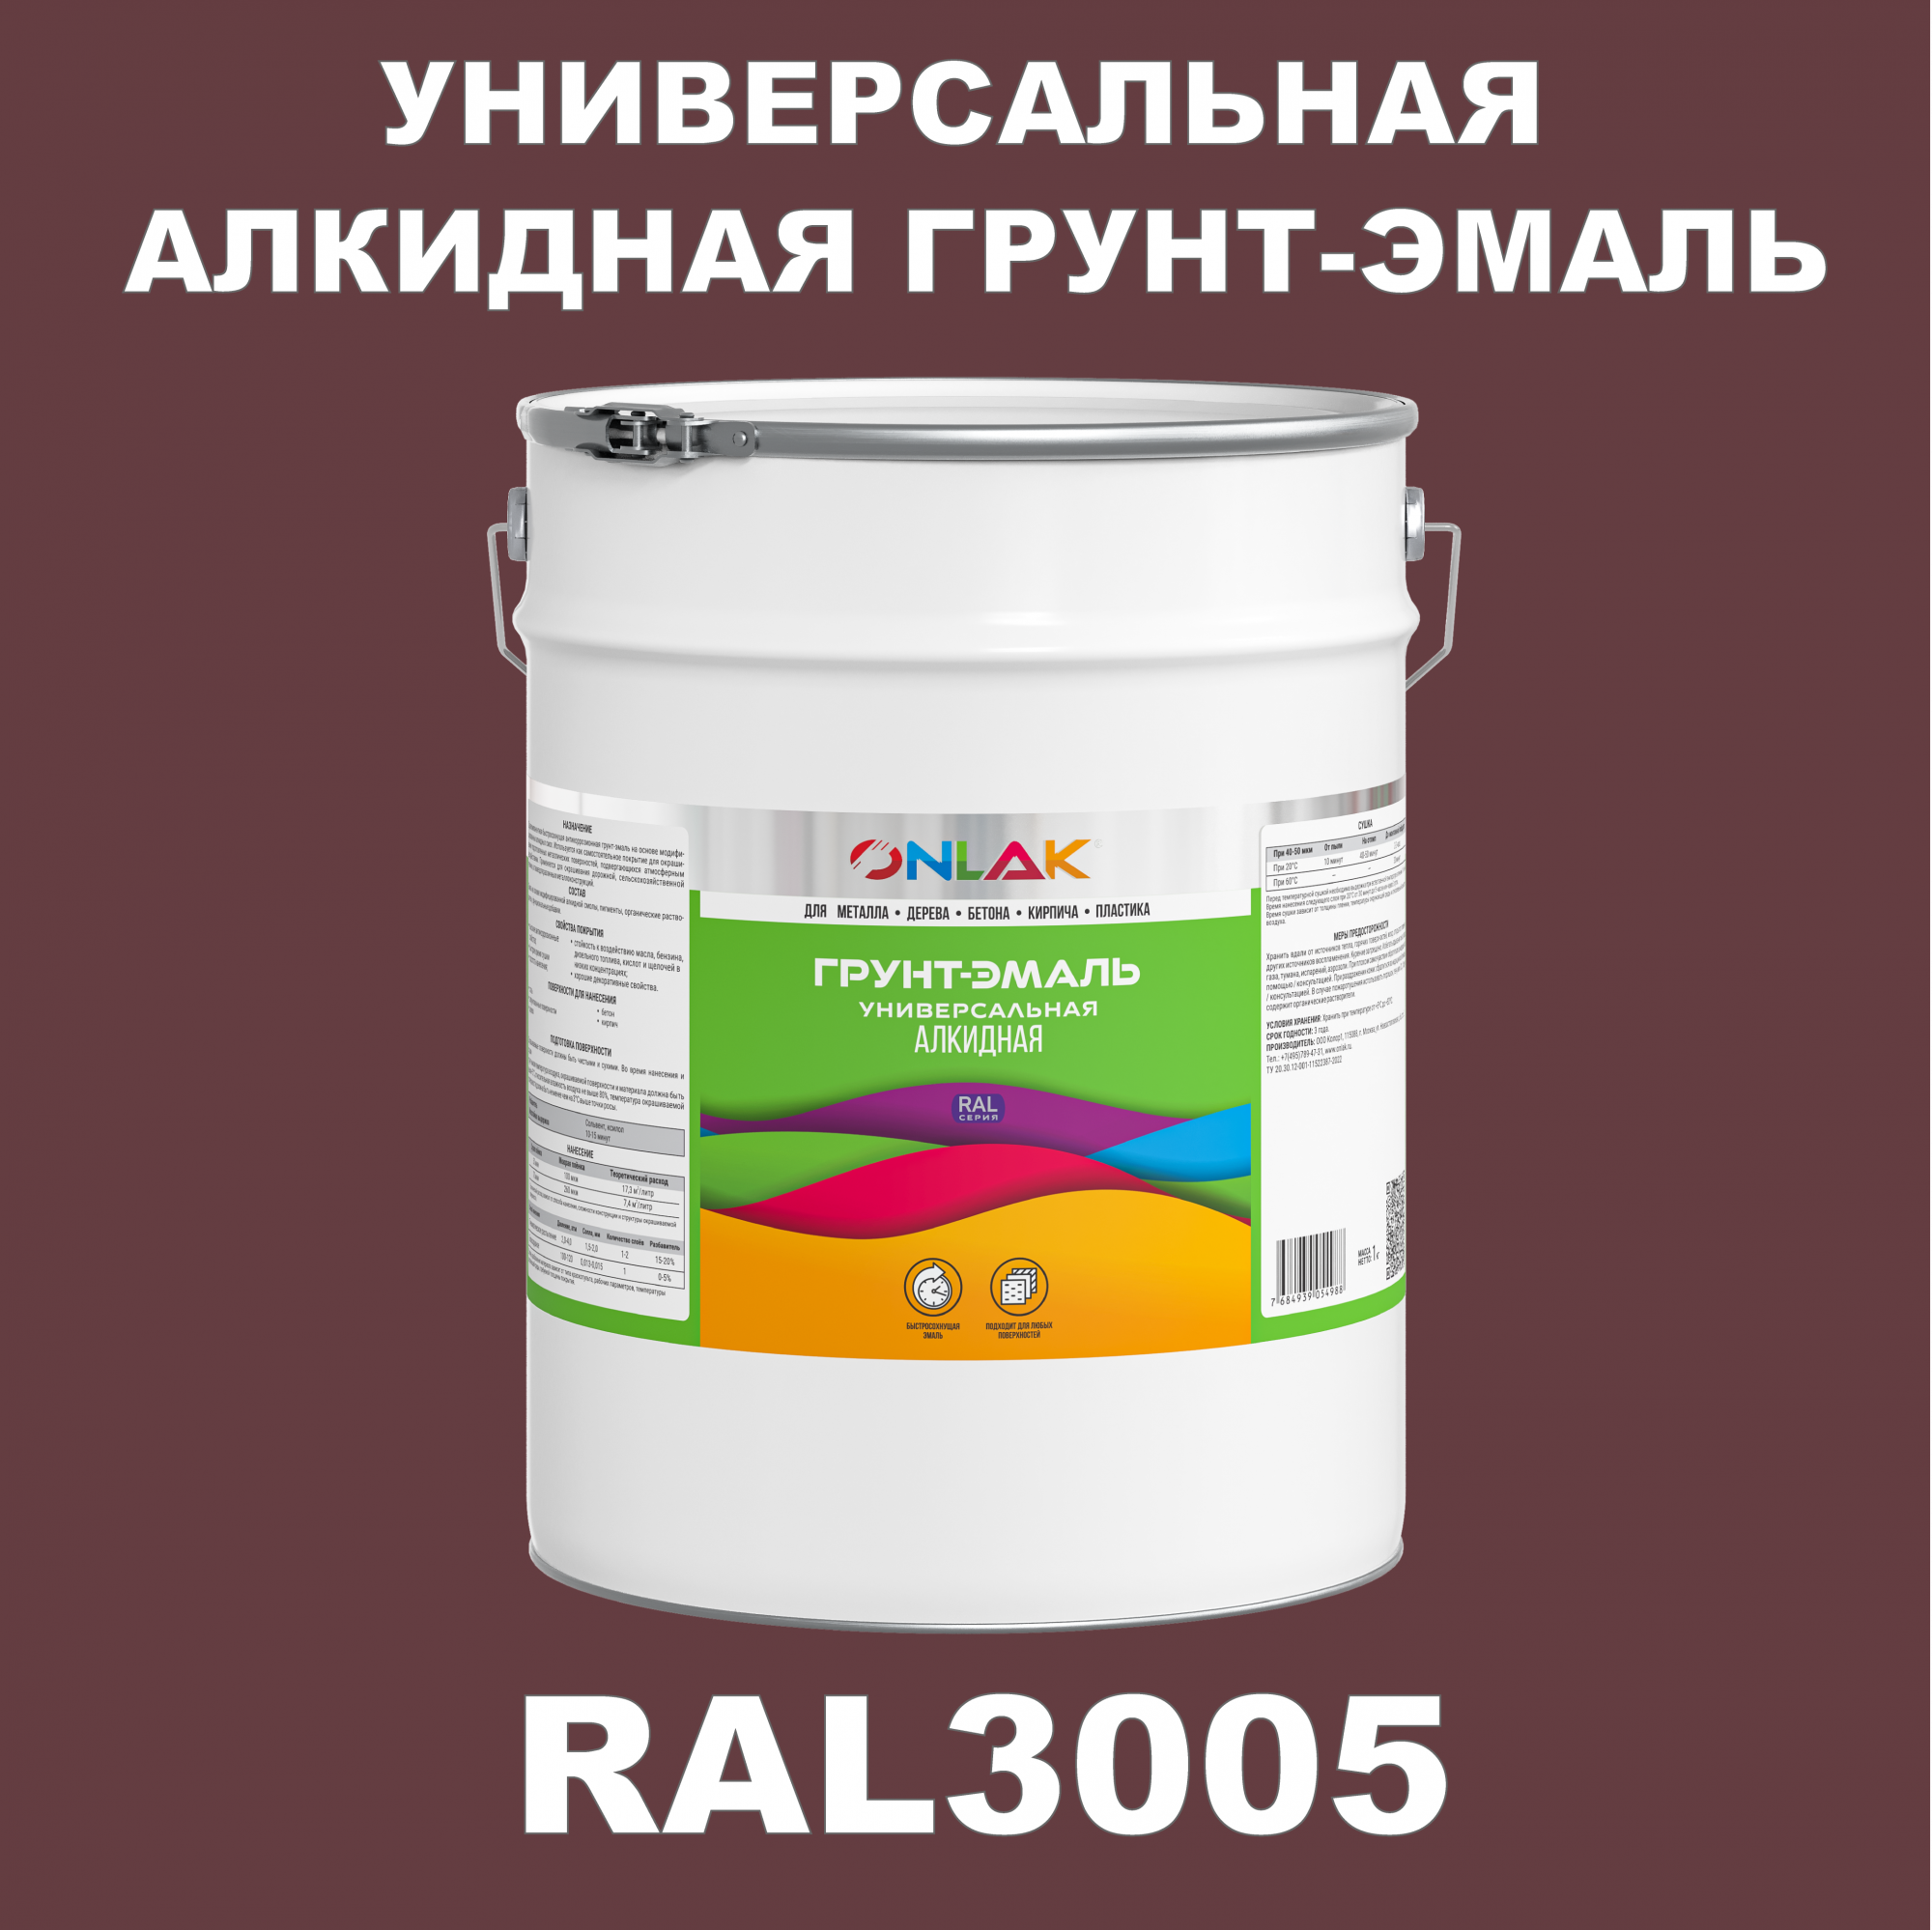 Грунт-эмаль ONLAK 1К RAL3005 антикоррозионная алкидная по металлу по ржавчине 20 кг